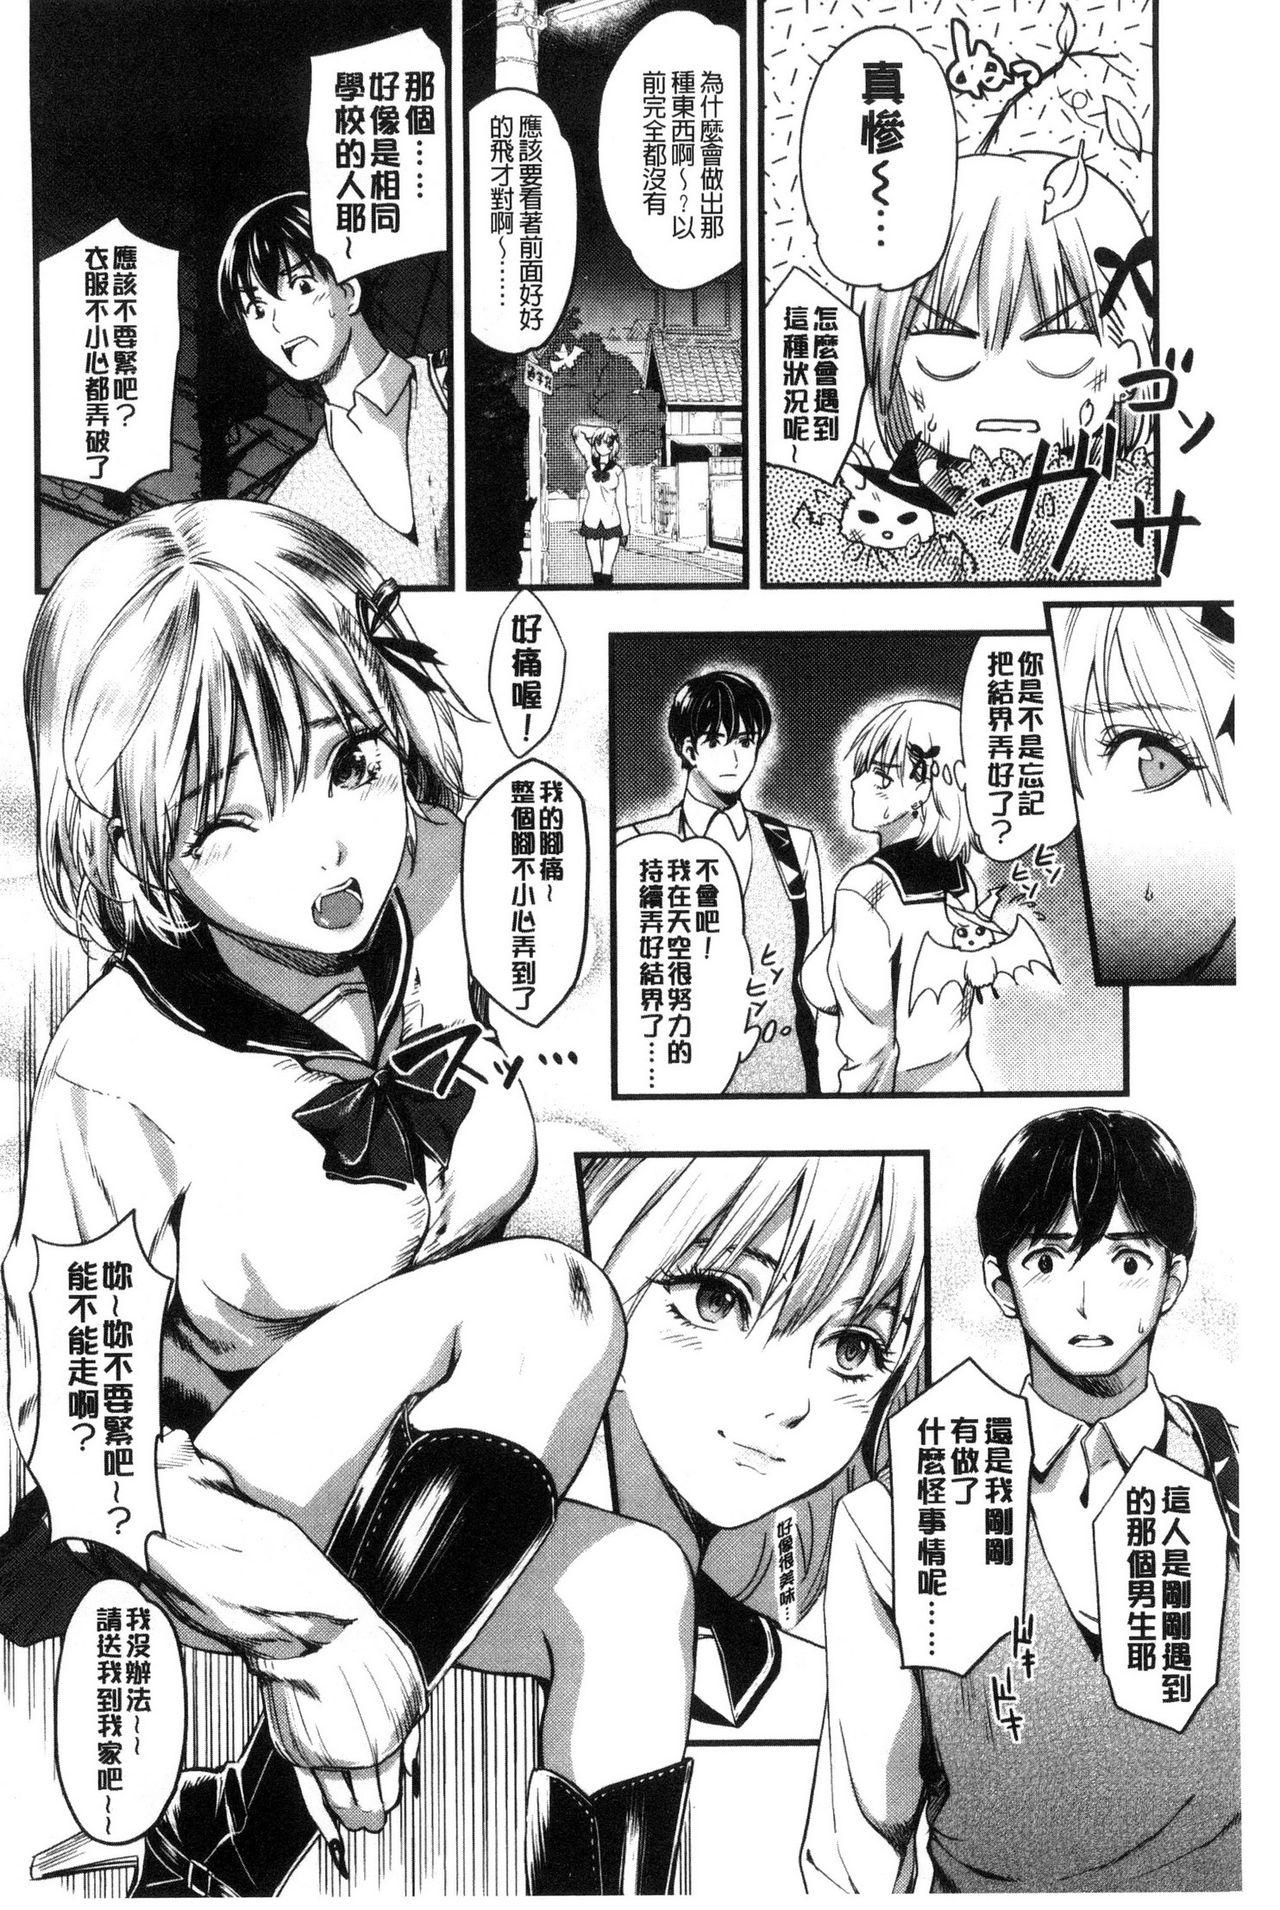 Seifuku no Mama Aishinasai! - Love in school uniform 67